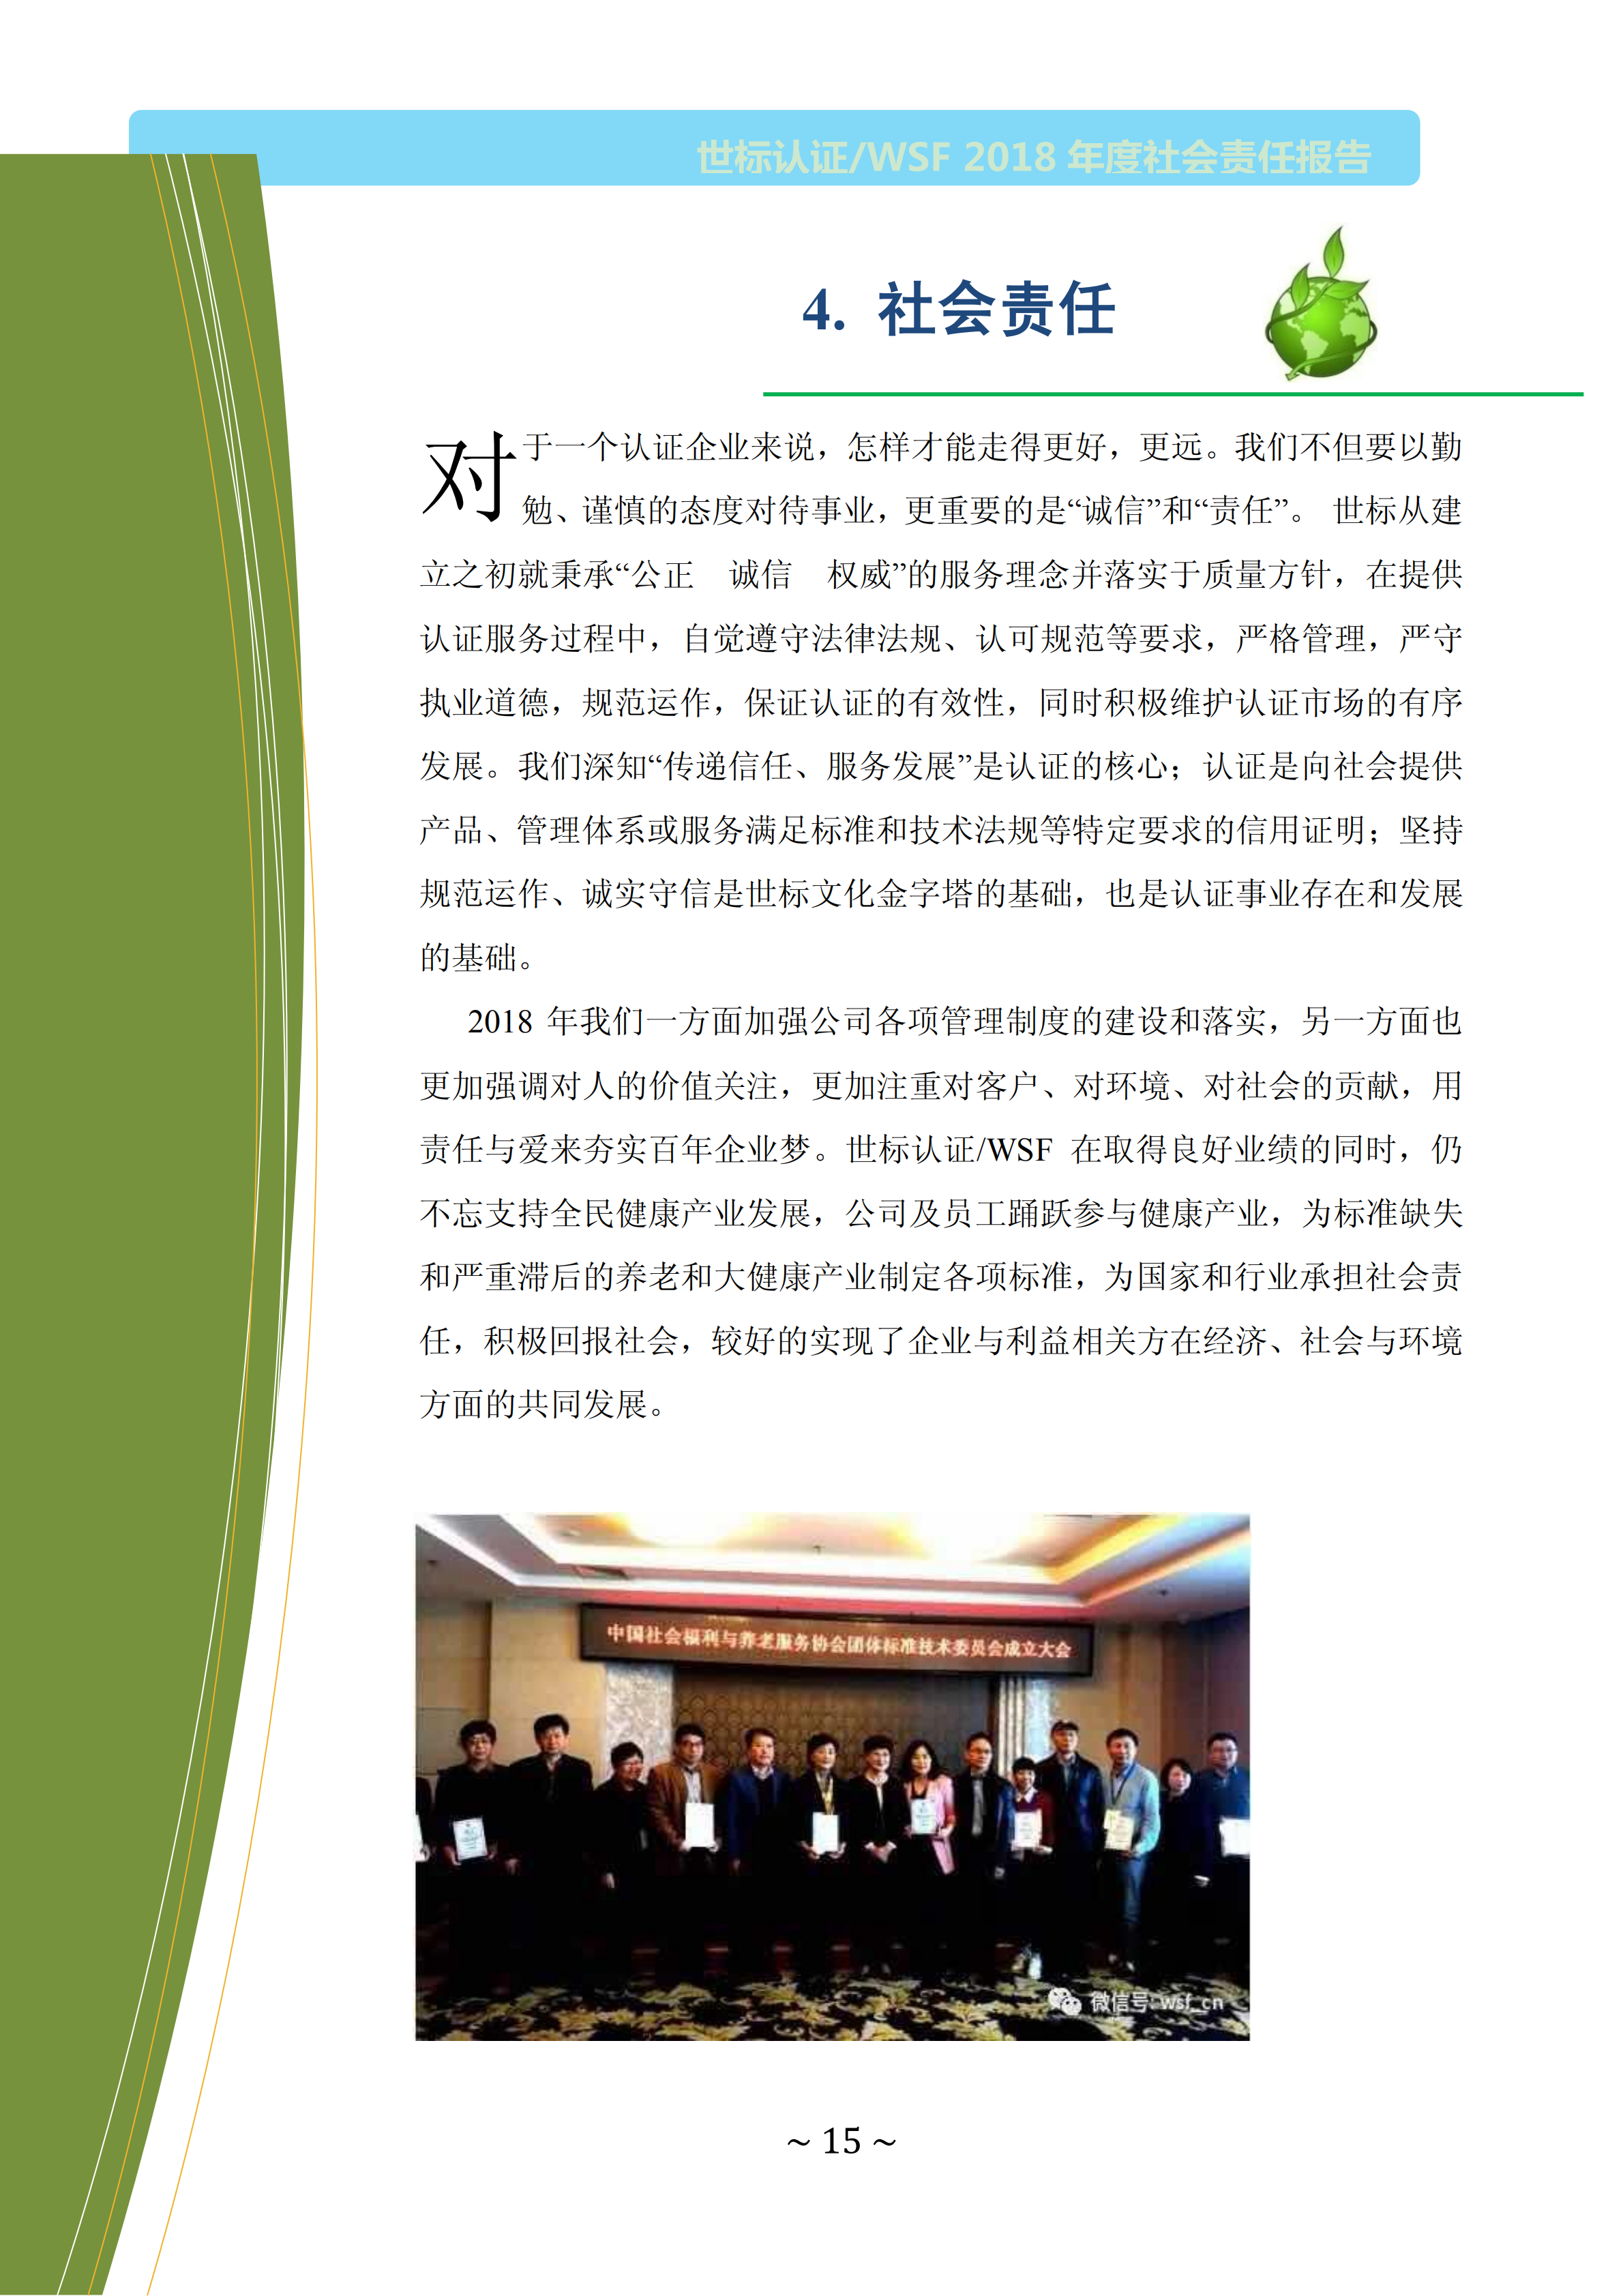  北京世标2018年社会责任报告(图15)